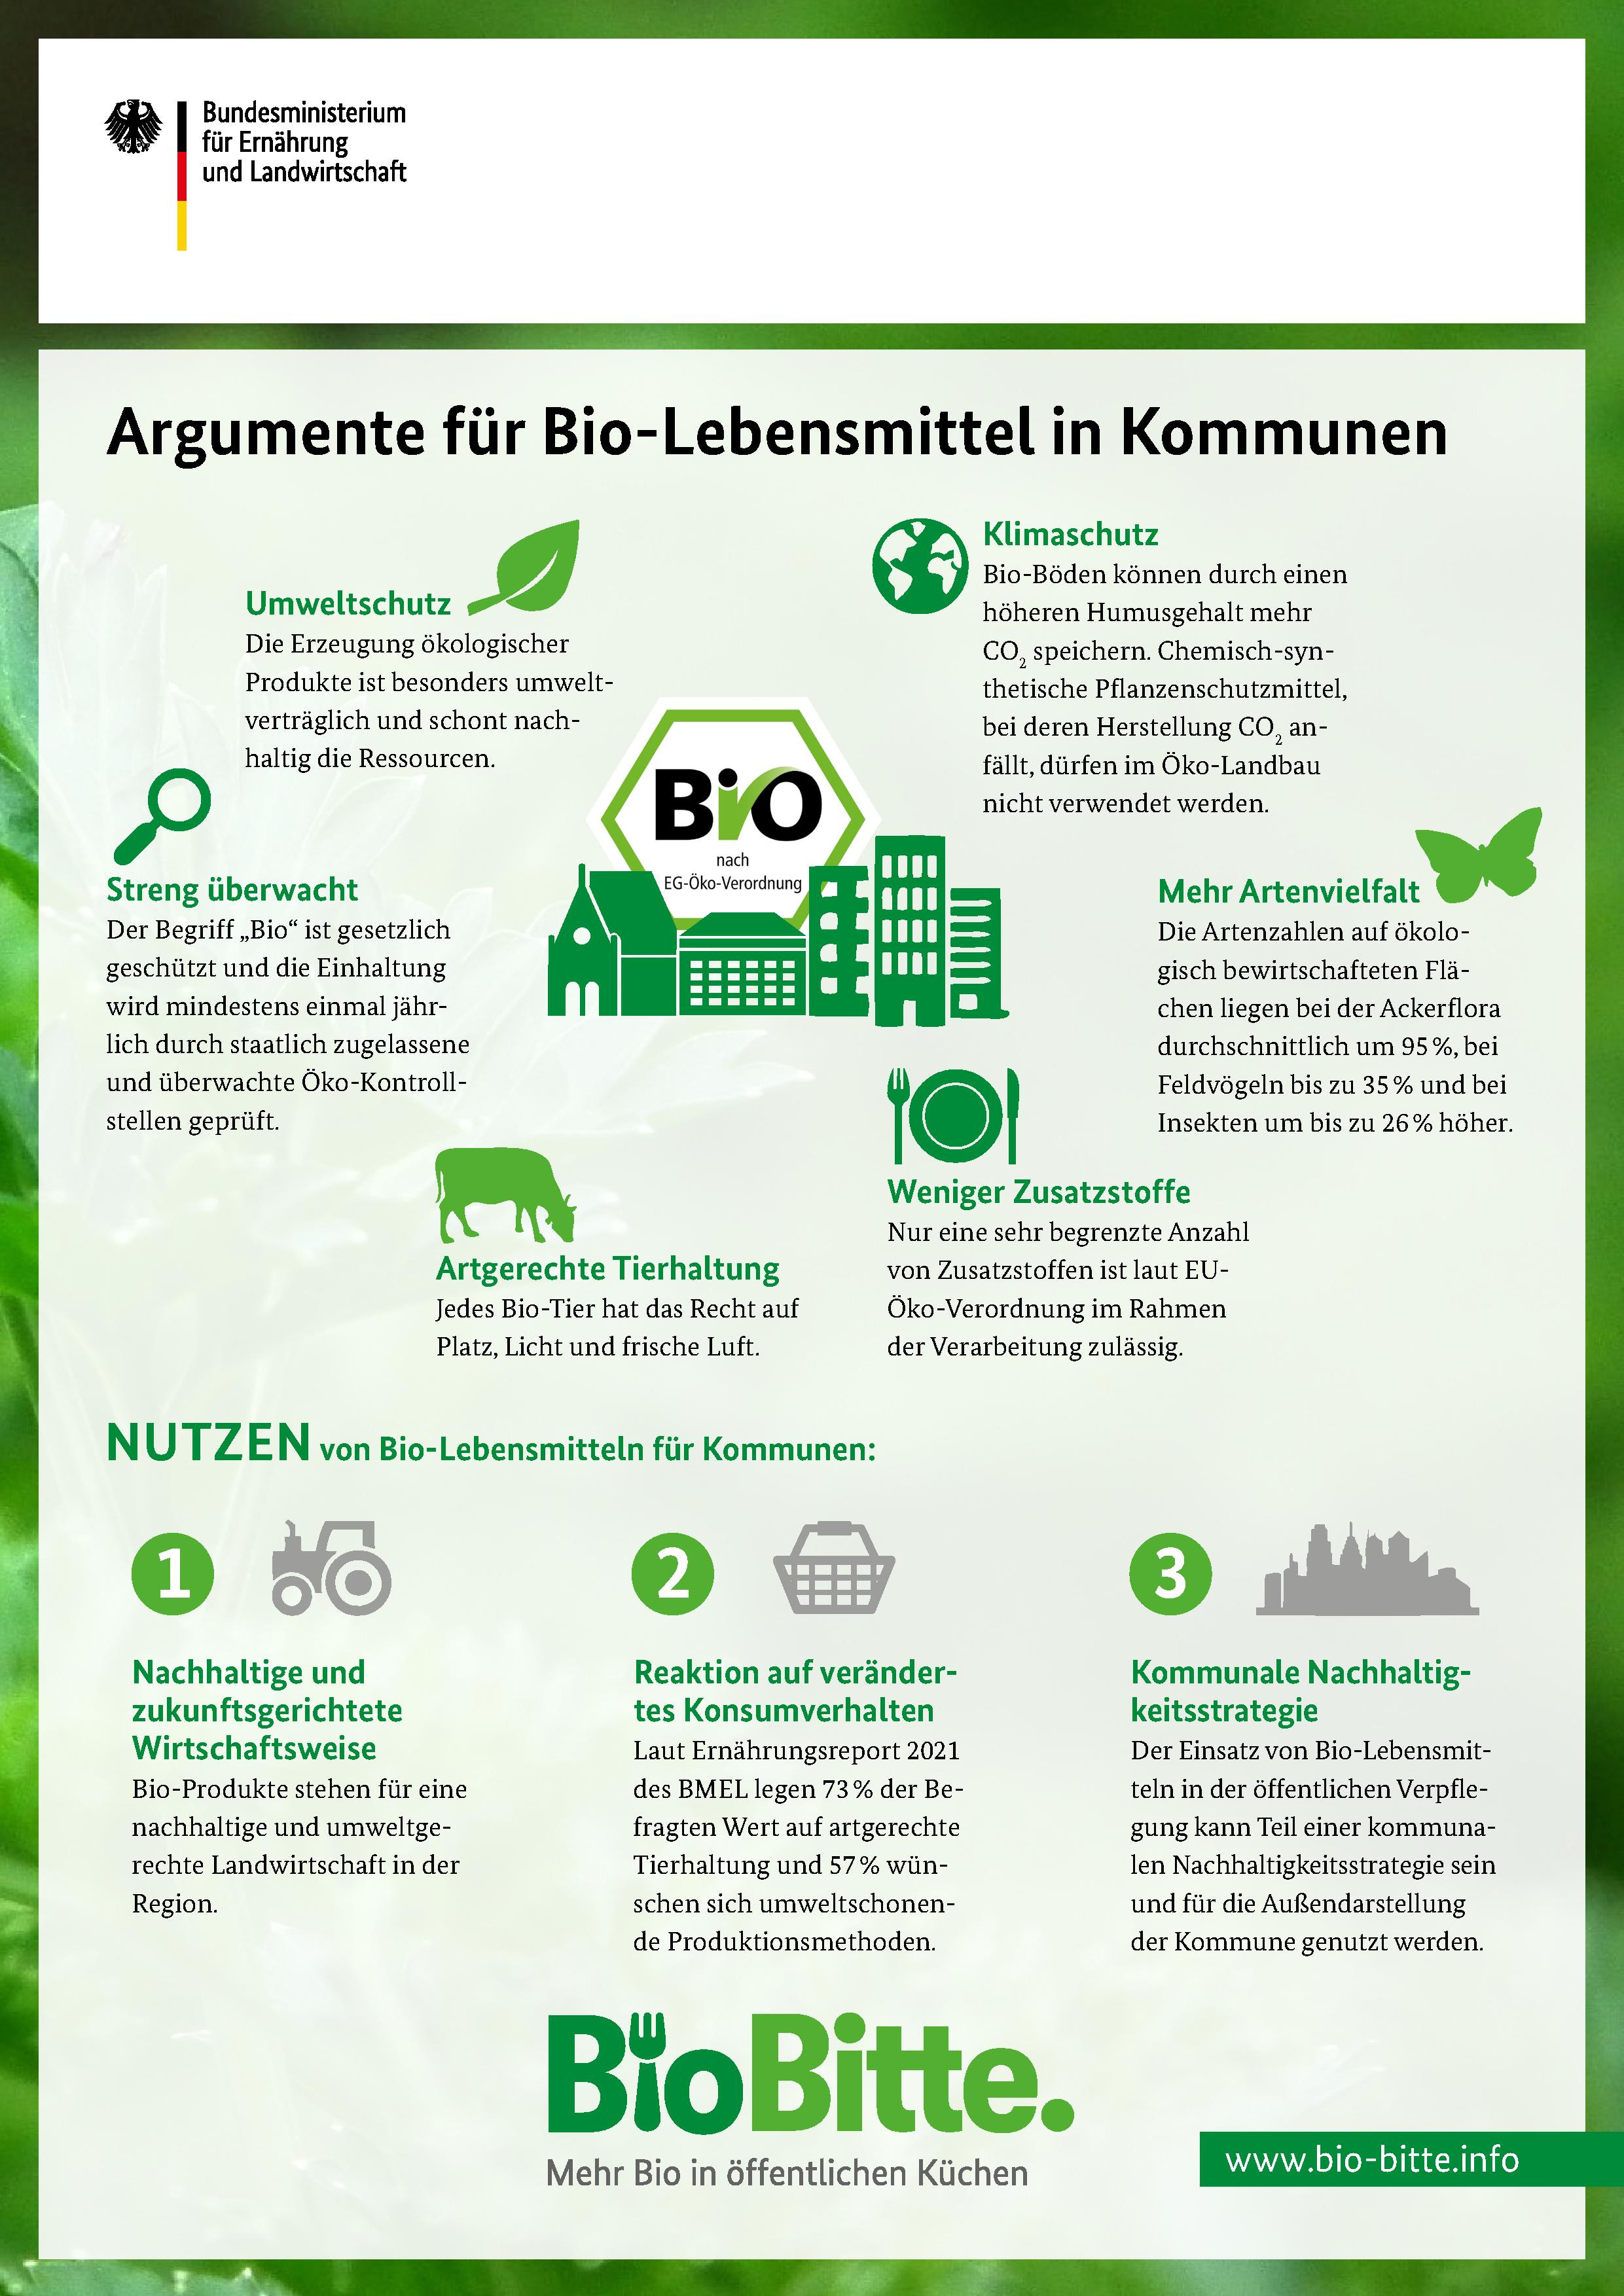 Argumente für Bio-Lebensmittel in Kommunen